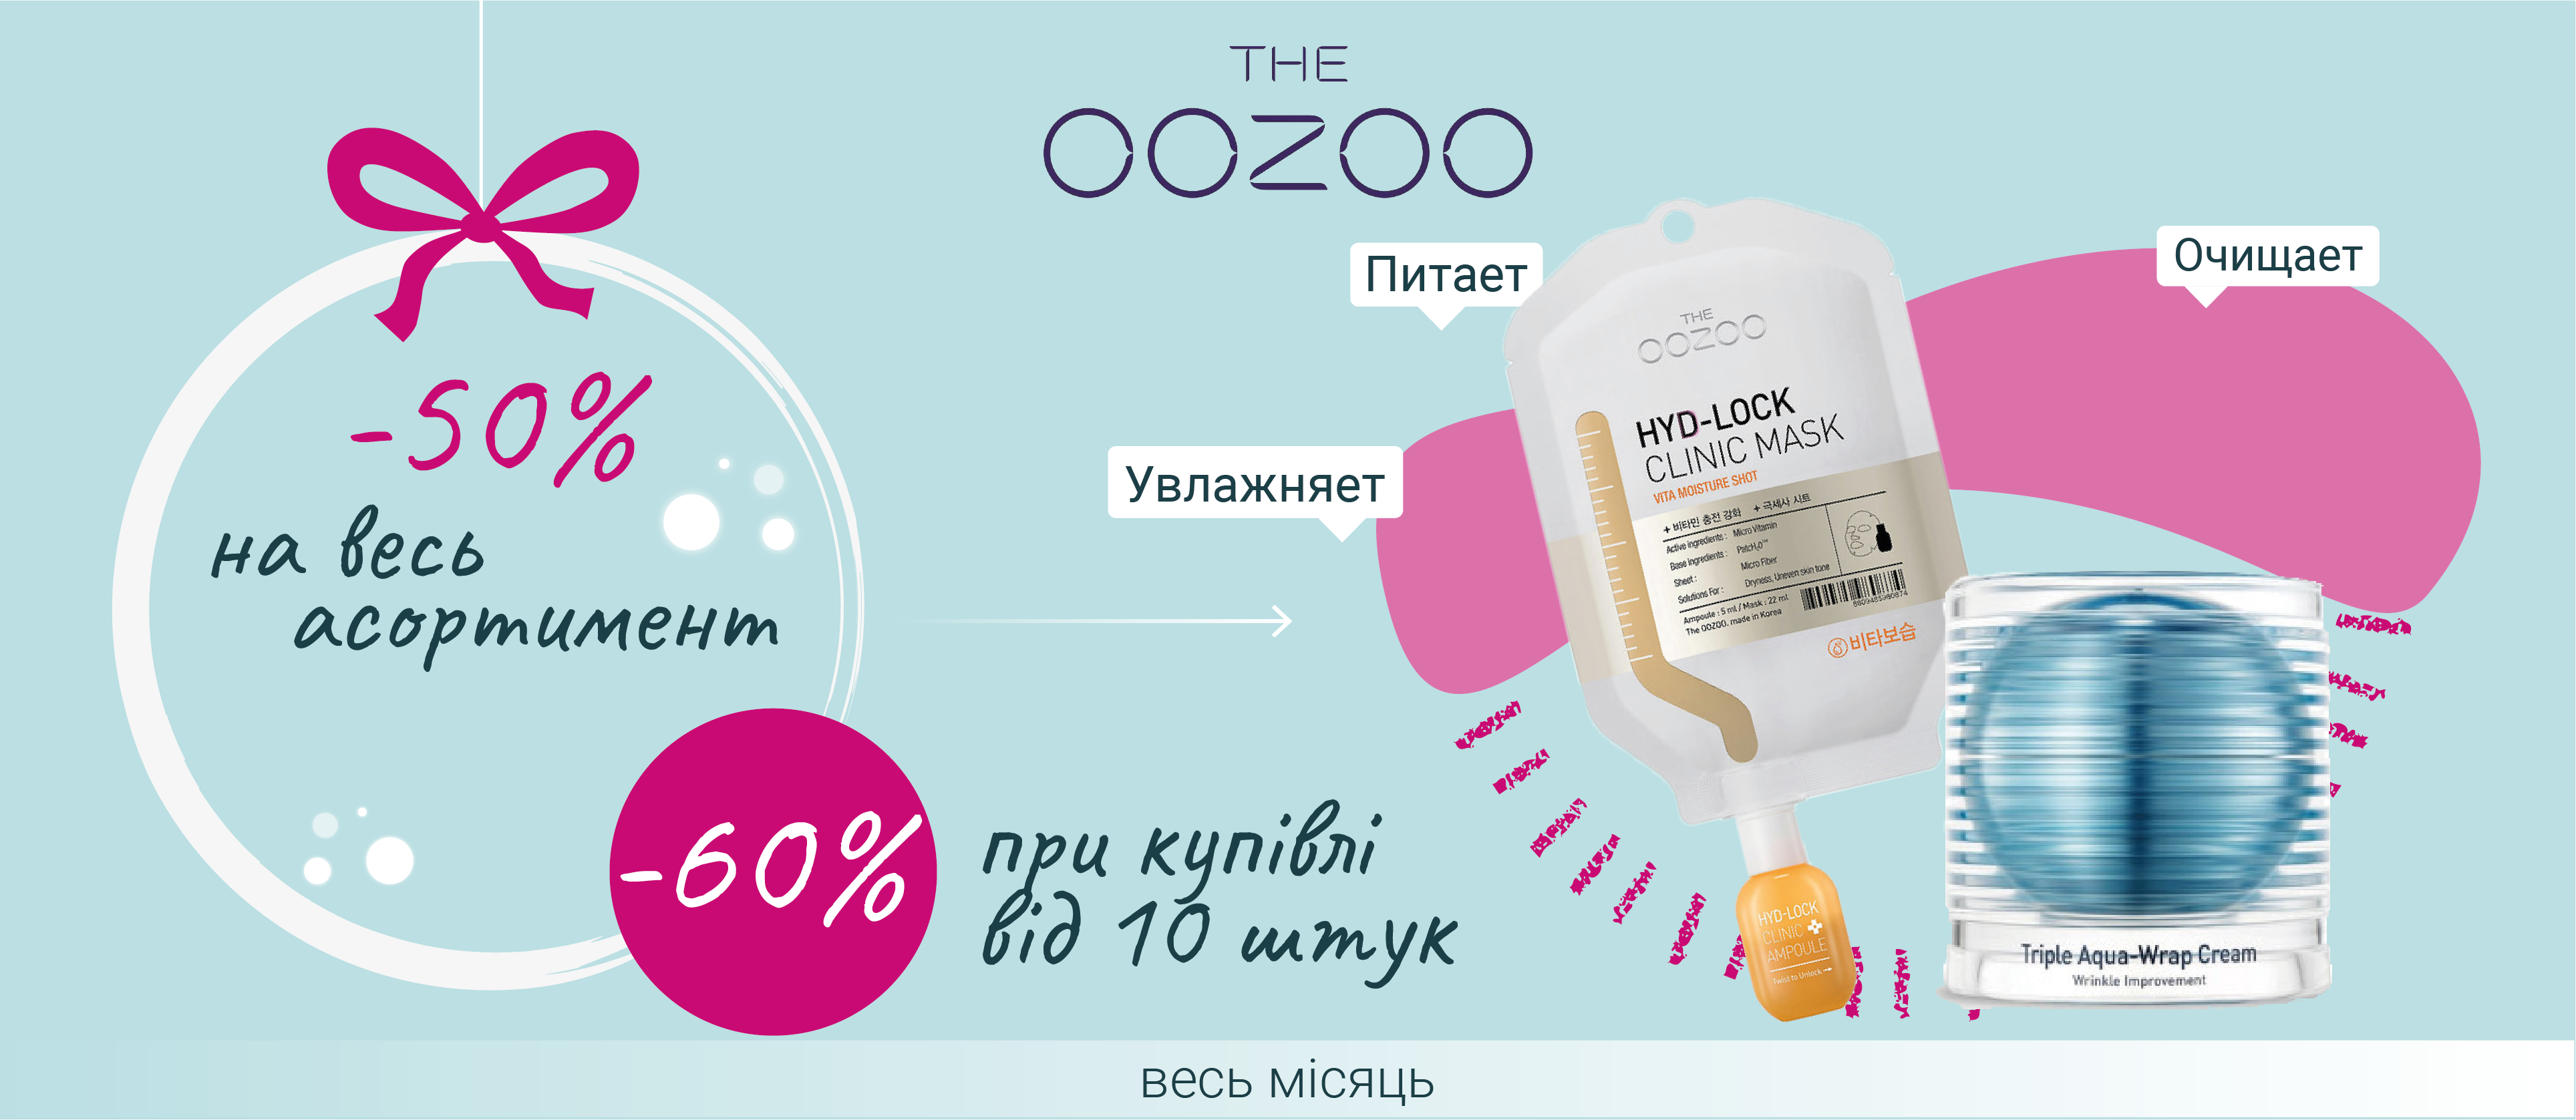 Скидка на бренд THE OOZOO